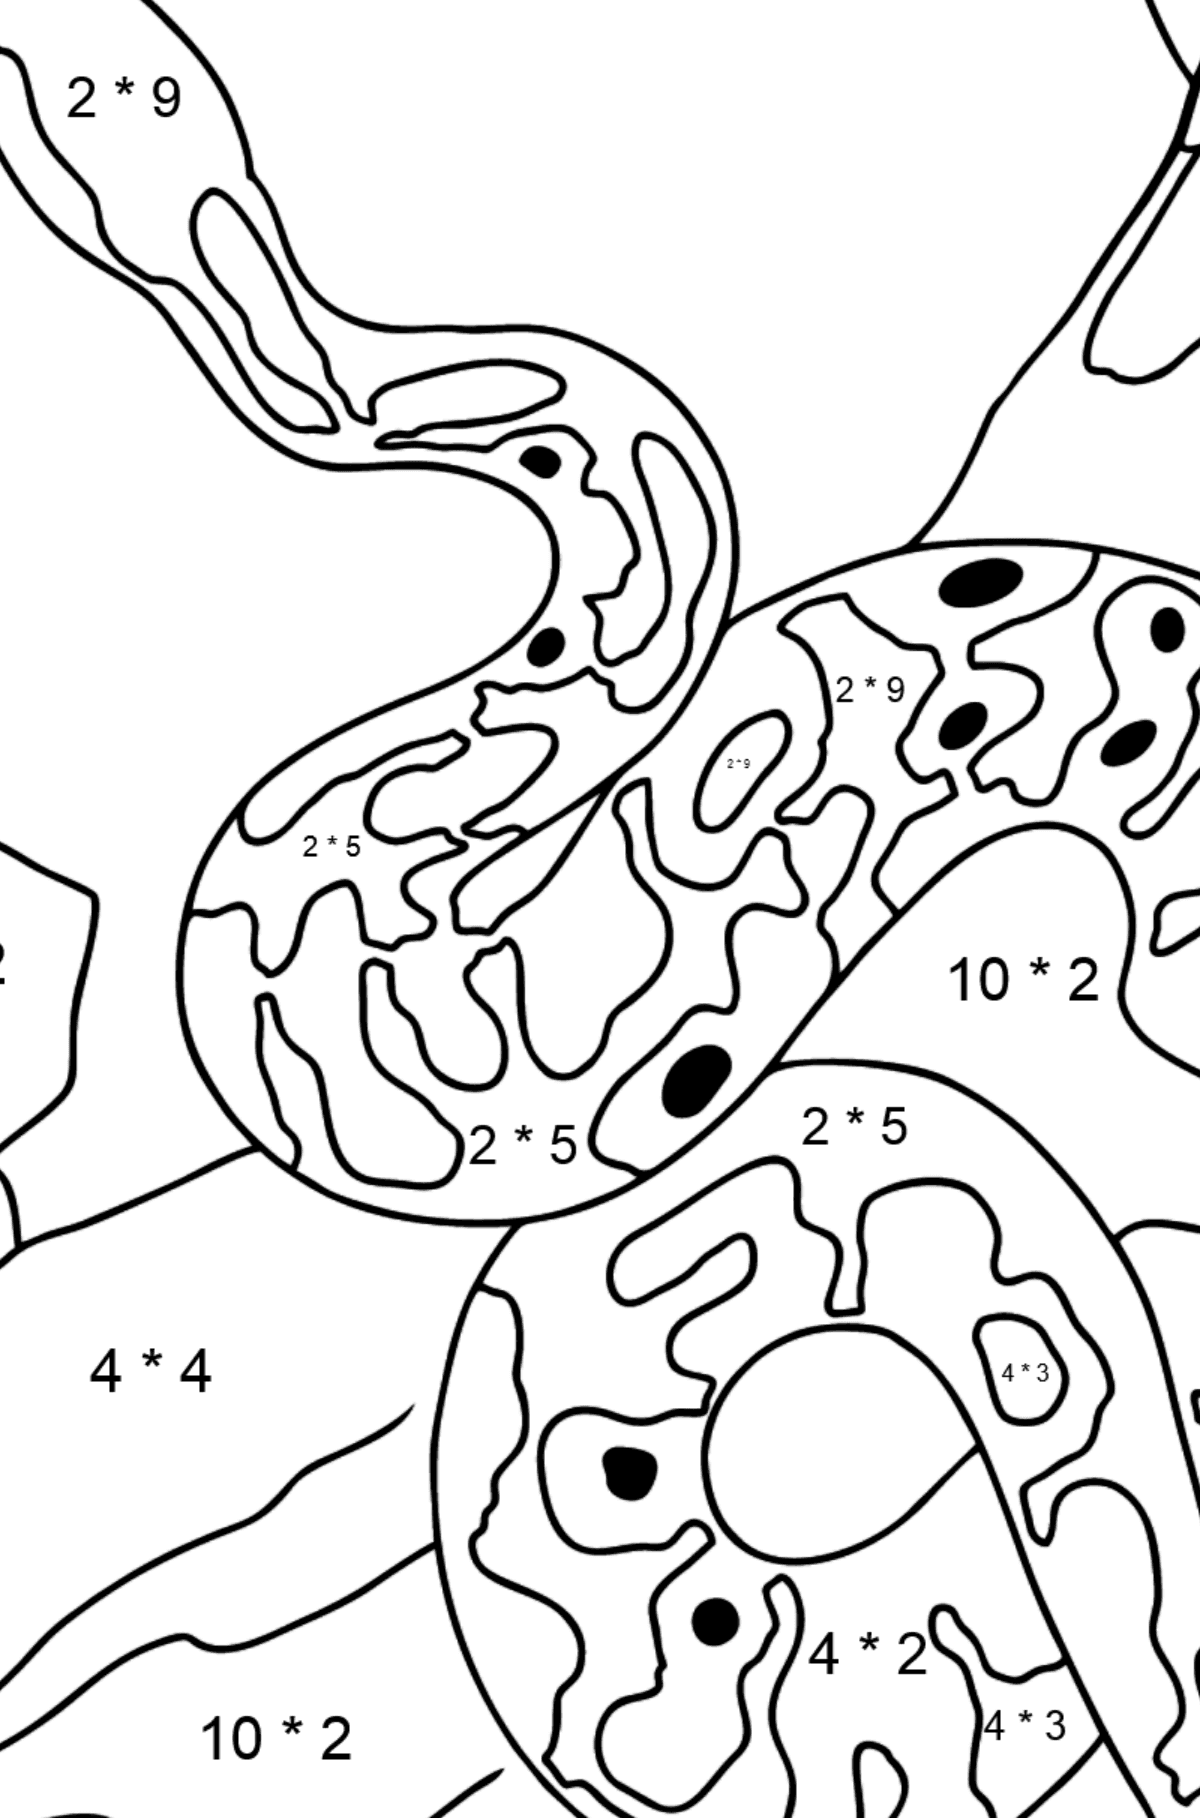 Disegno di Serpente da colorare - Colorazione matematica - Moltiplicazione per bambini